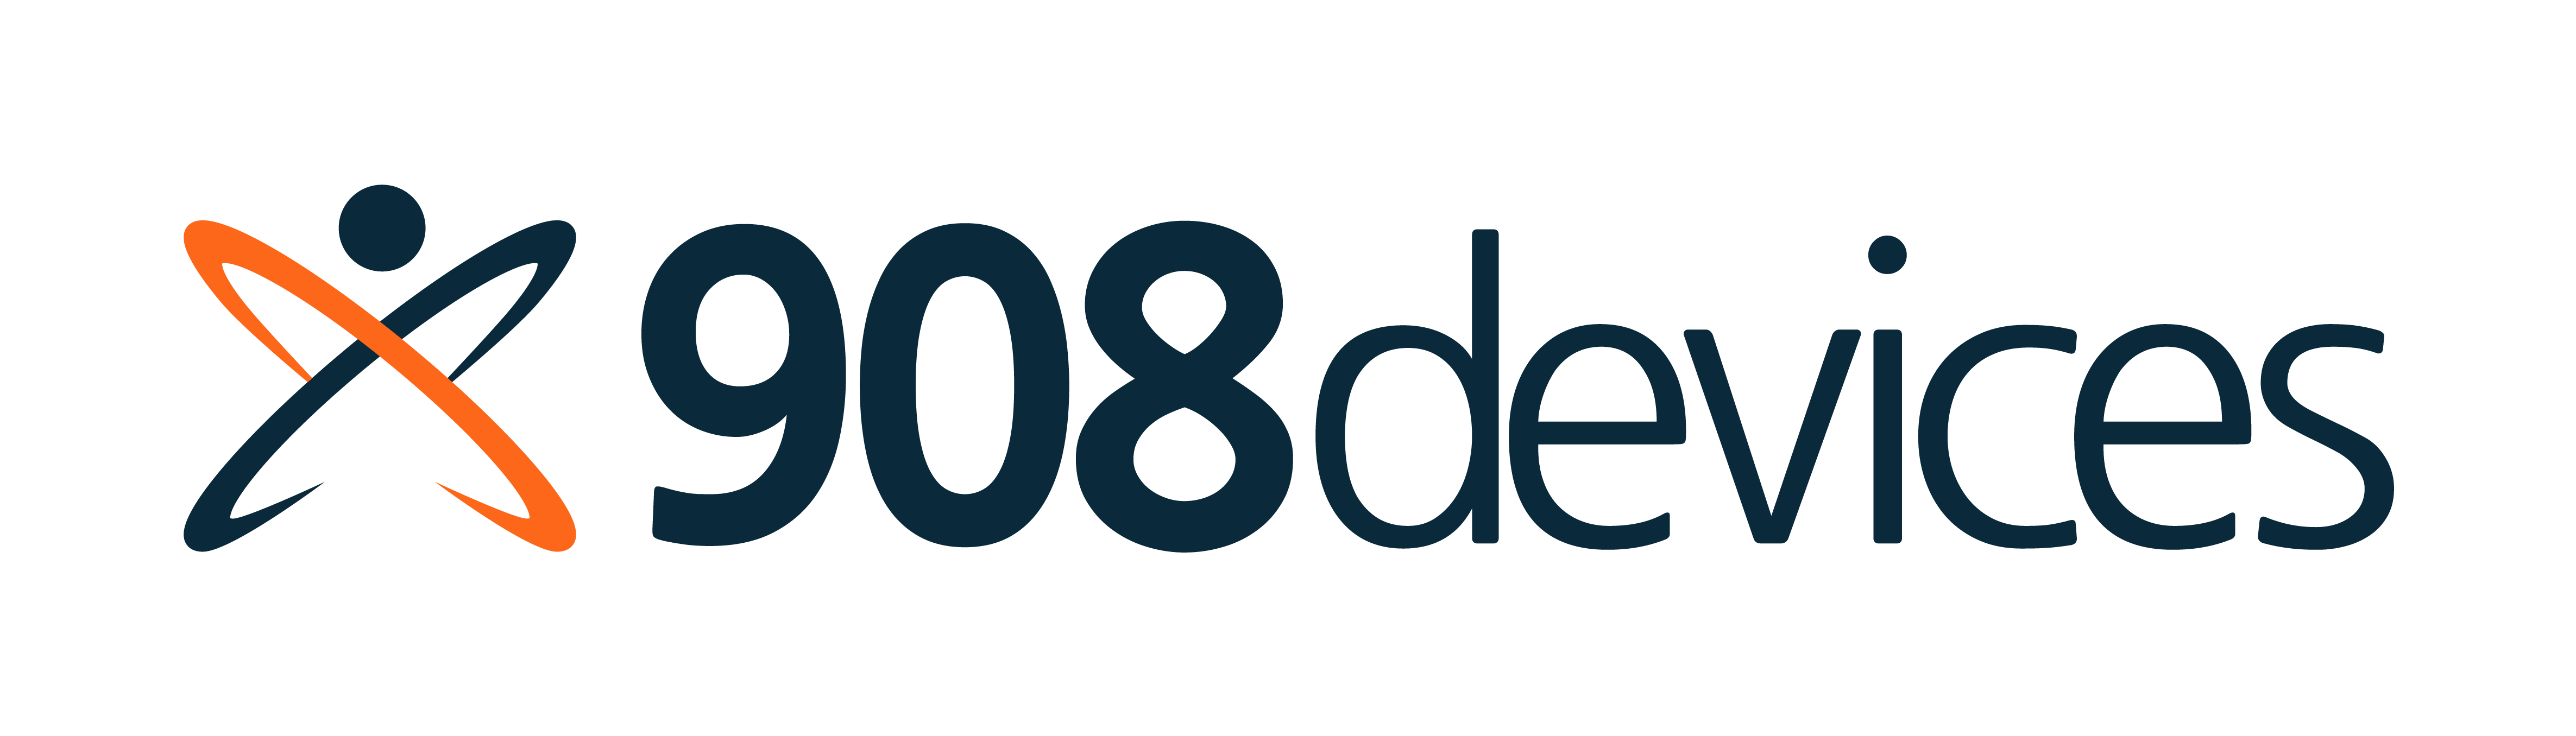 908Devices_Logo_Primary